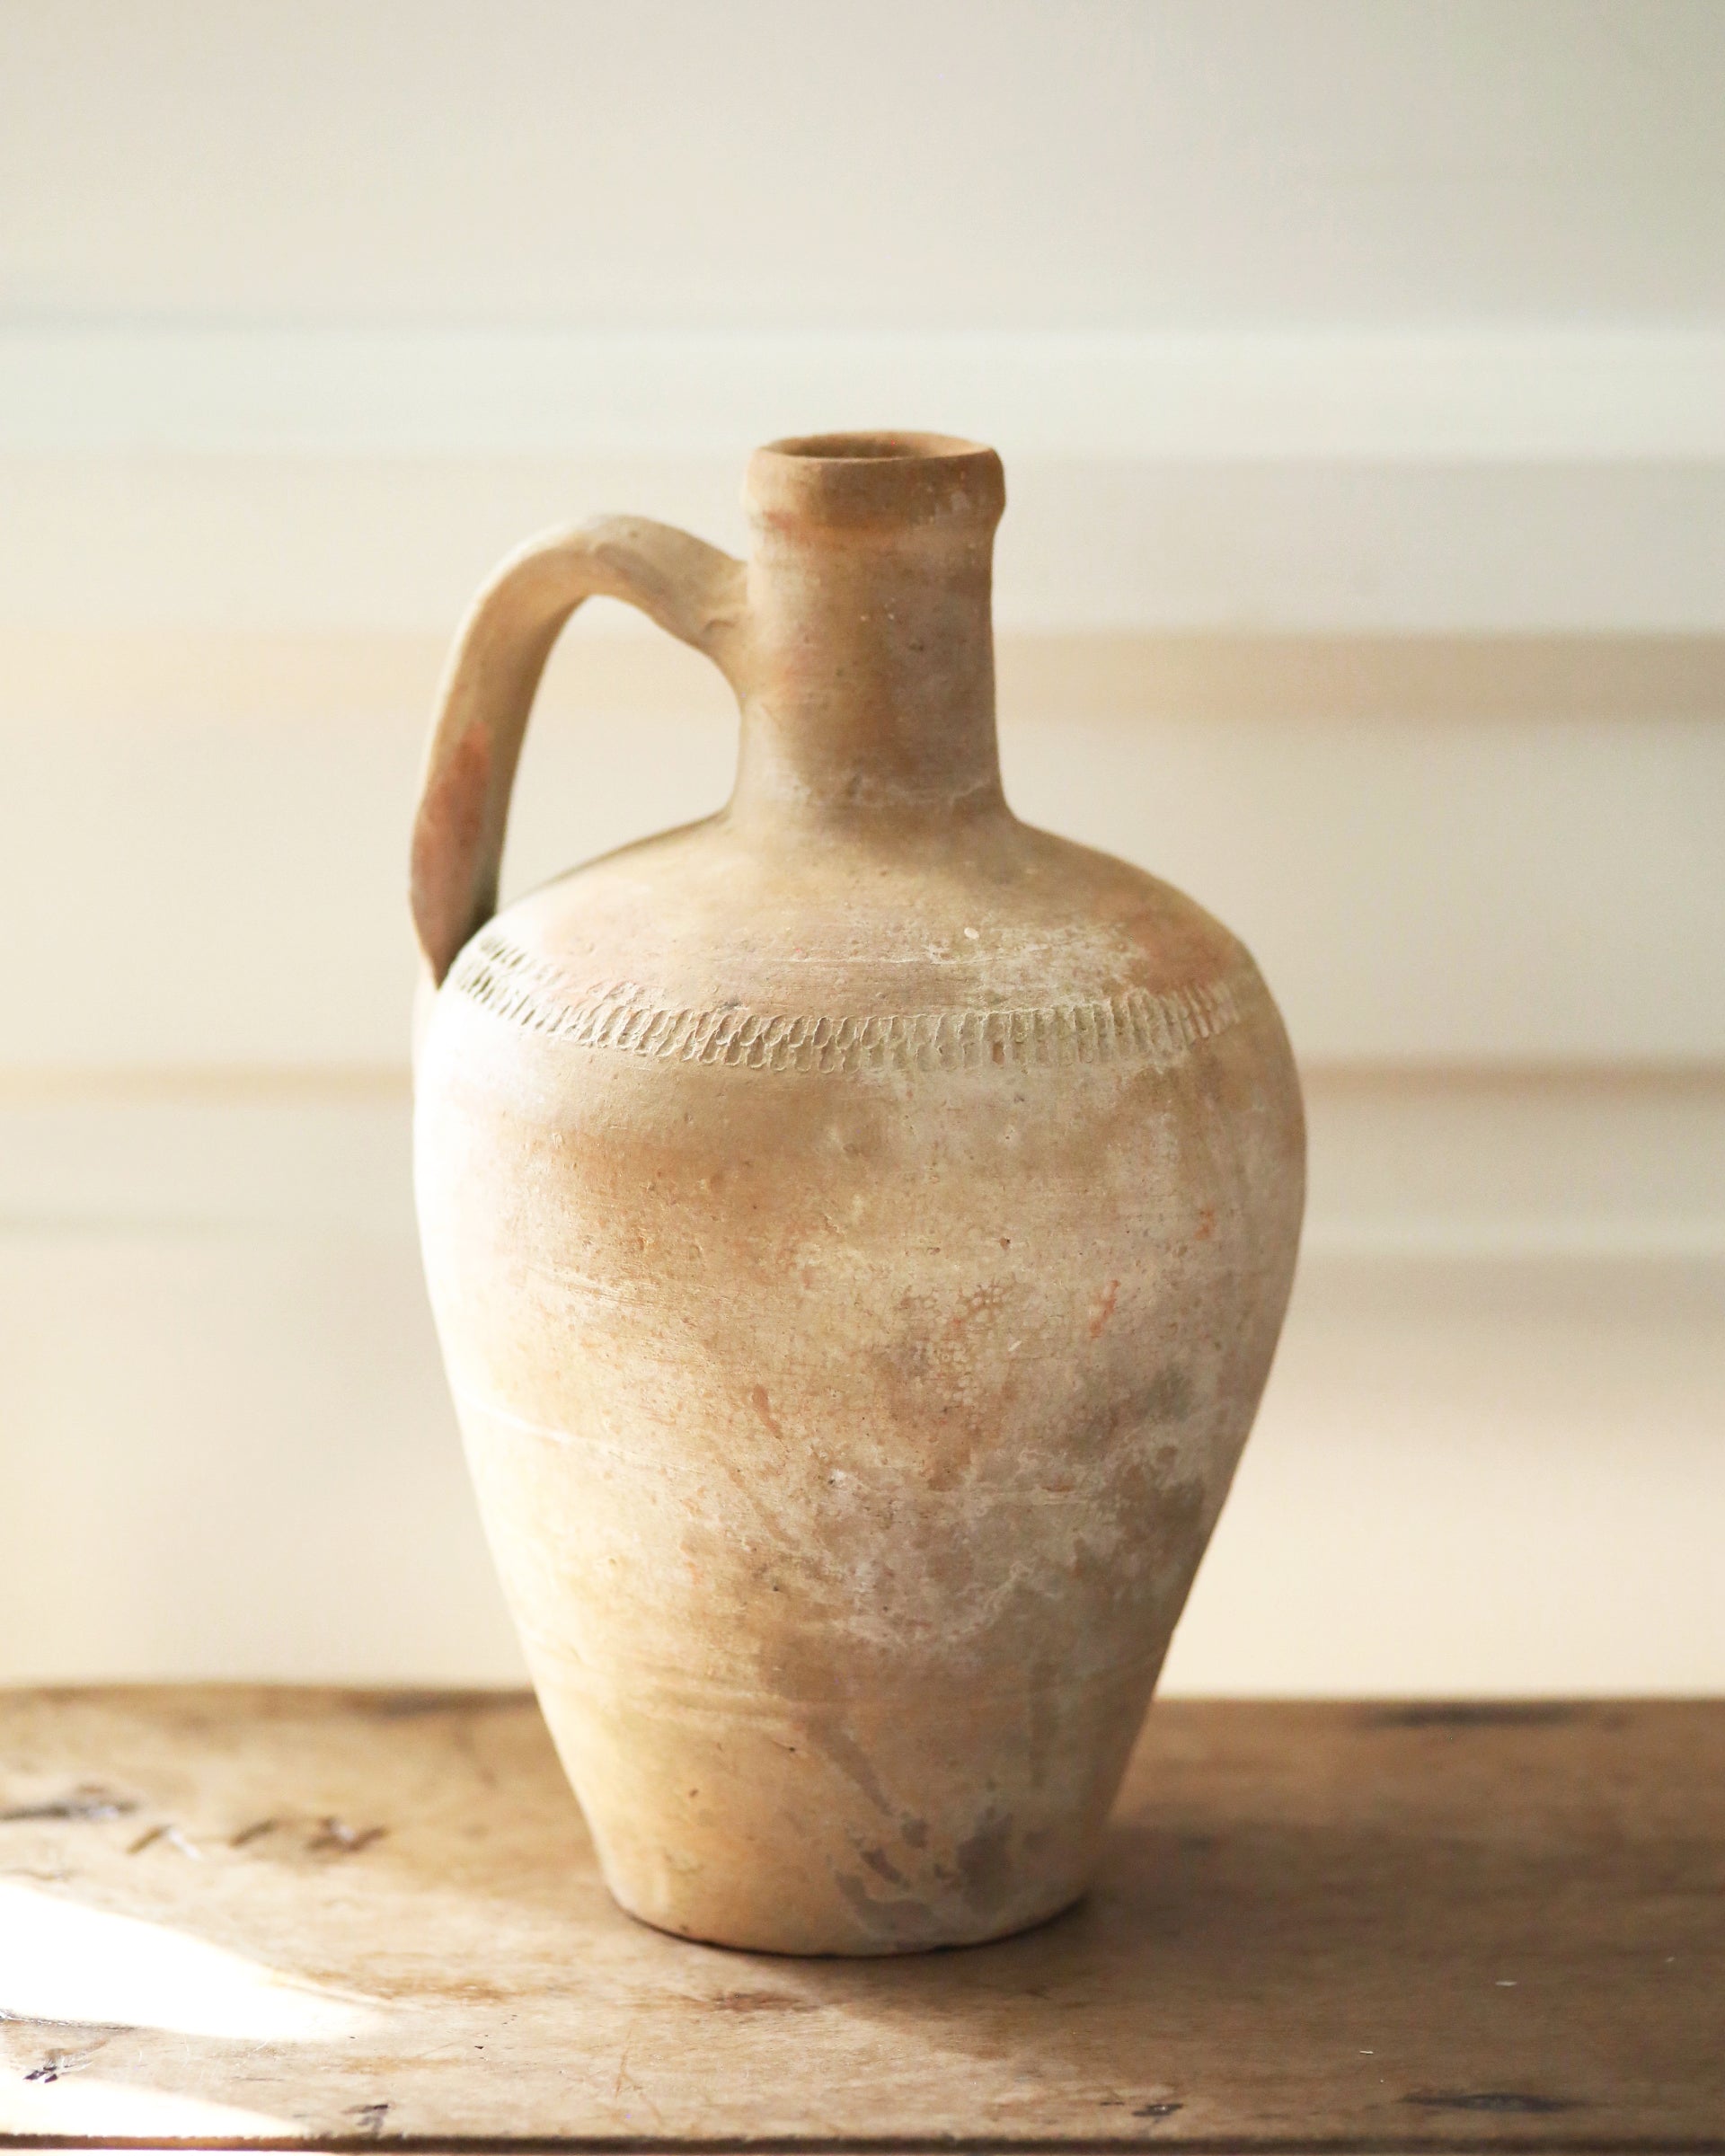 Original detail and patina of Turkish jug